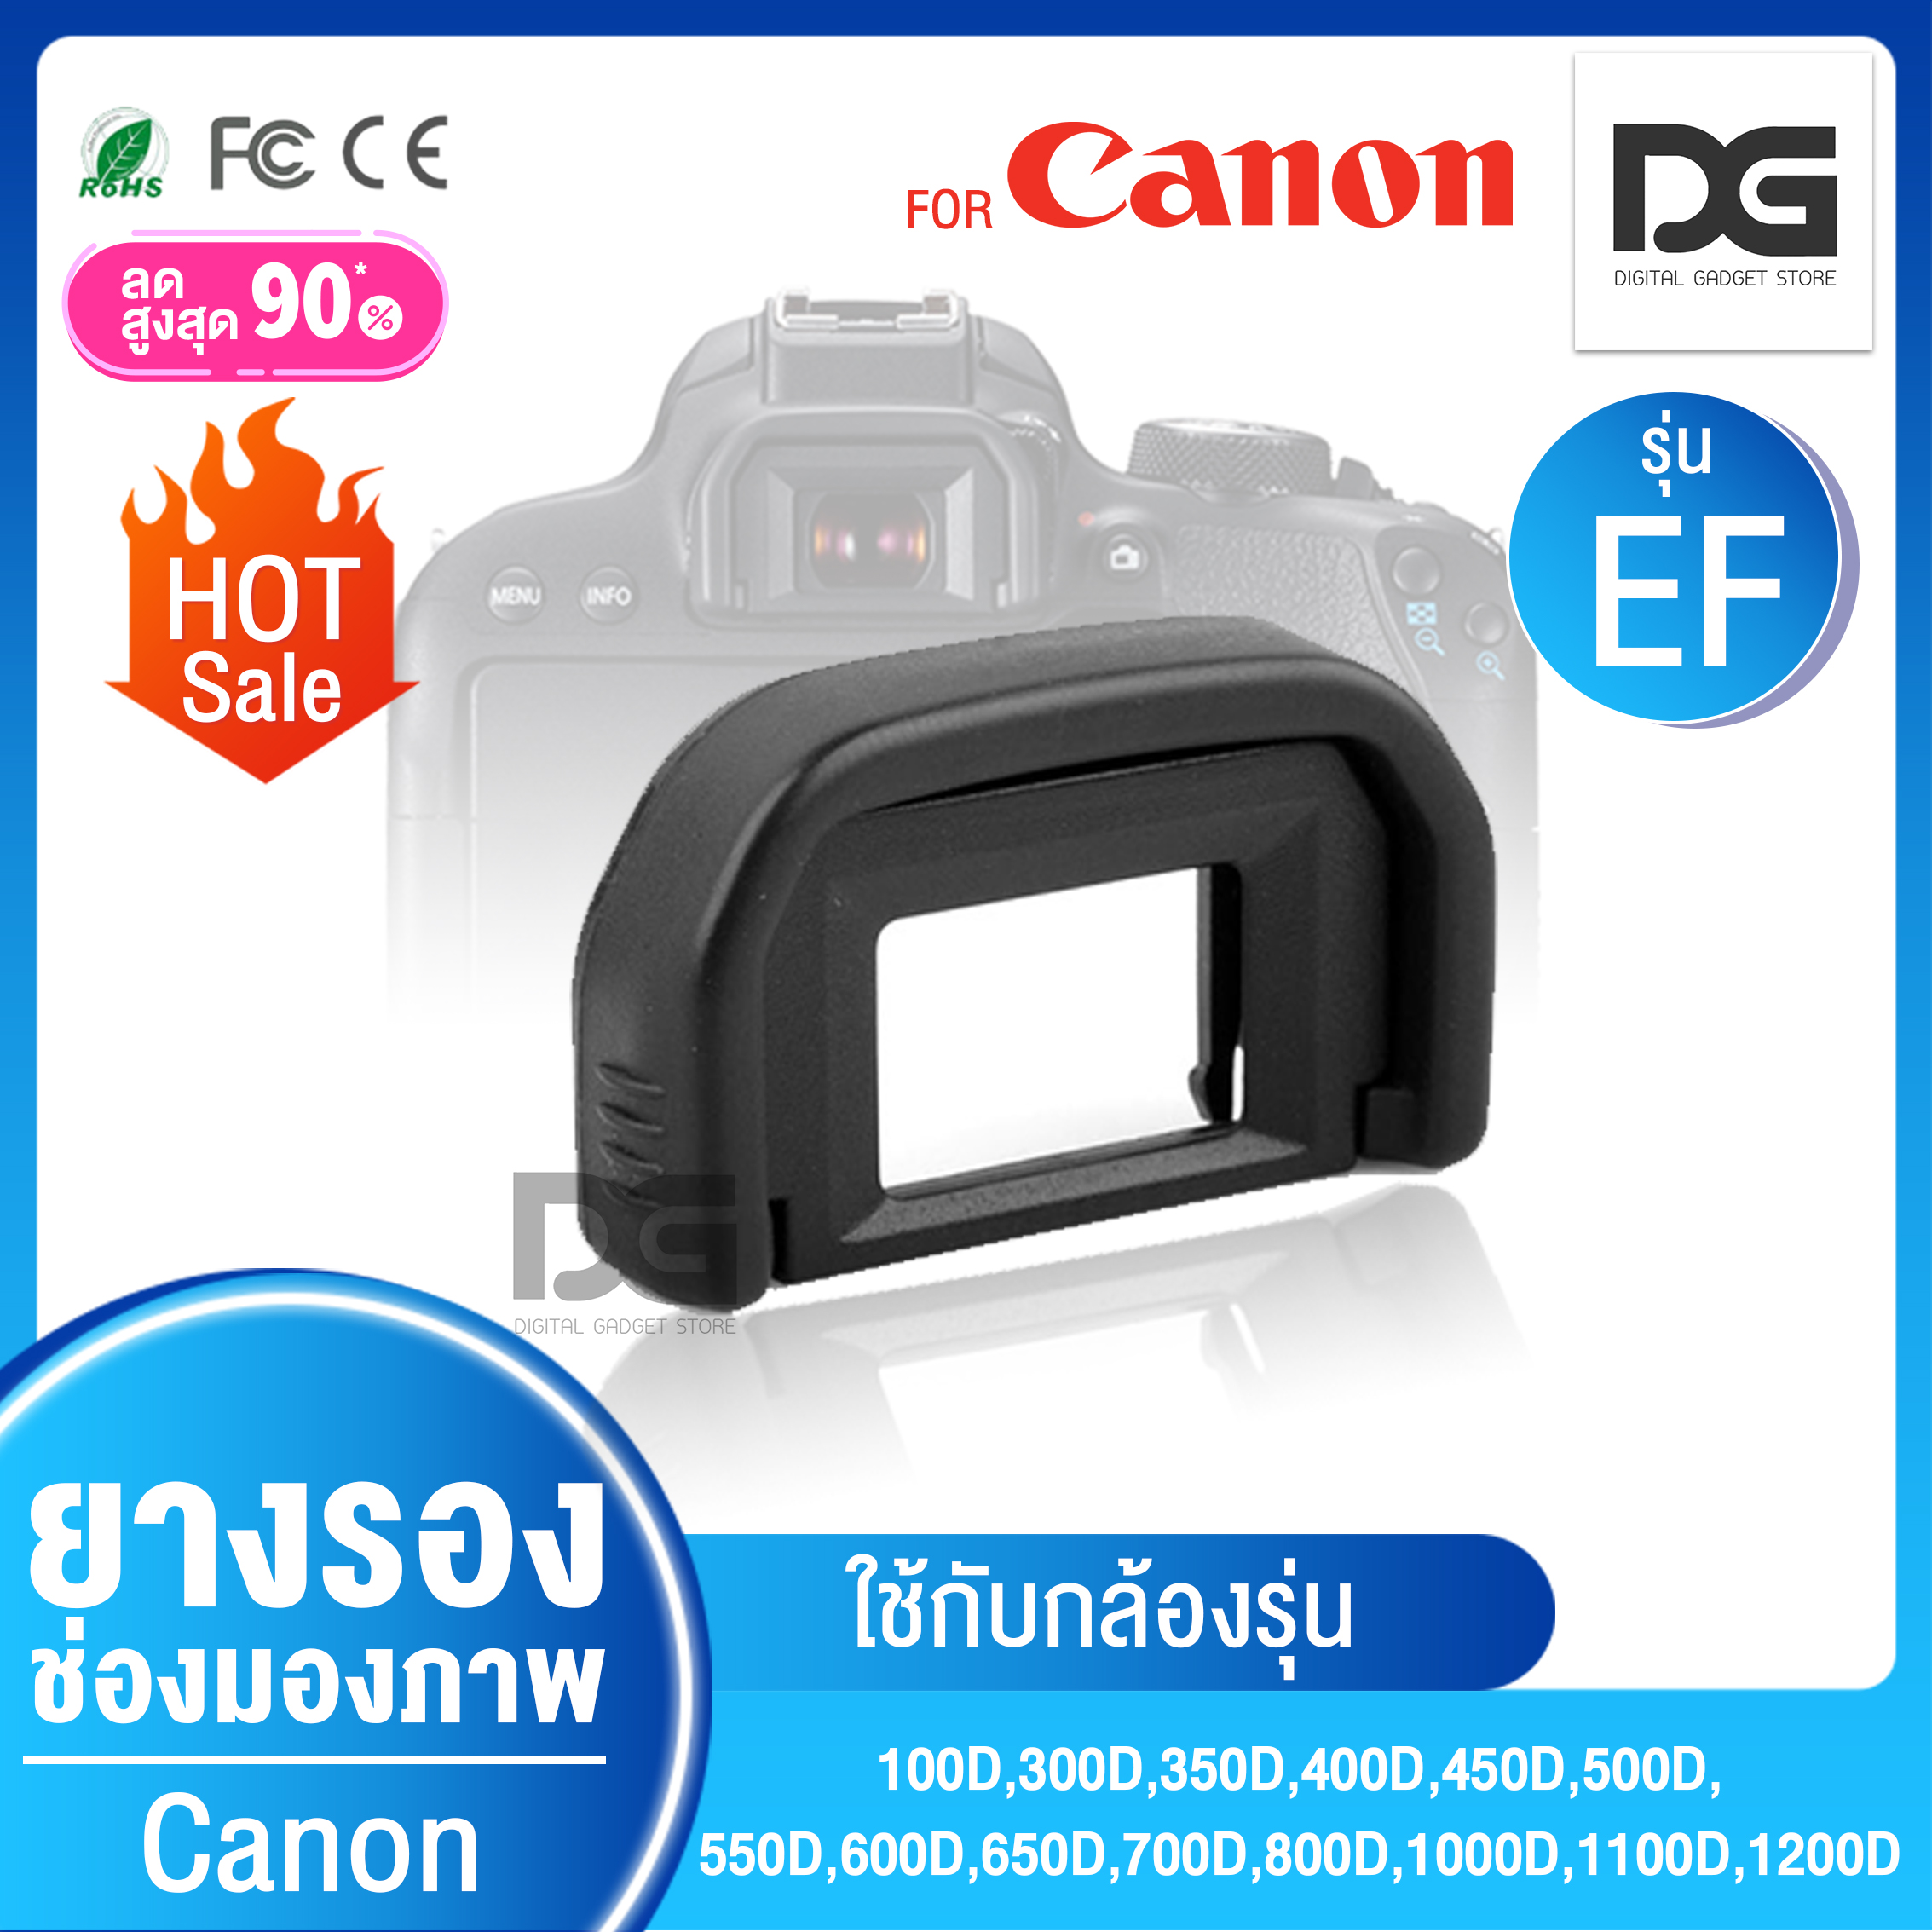 ยางรองตา ยางช่องมองภาพ EyeCup EF Canon EOS 100D,300D,350D,400D,450D,500D, 550D,600D,650D,700D,800D,1000D,1100D,1200D Digital gadget store